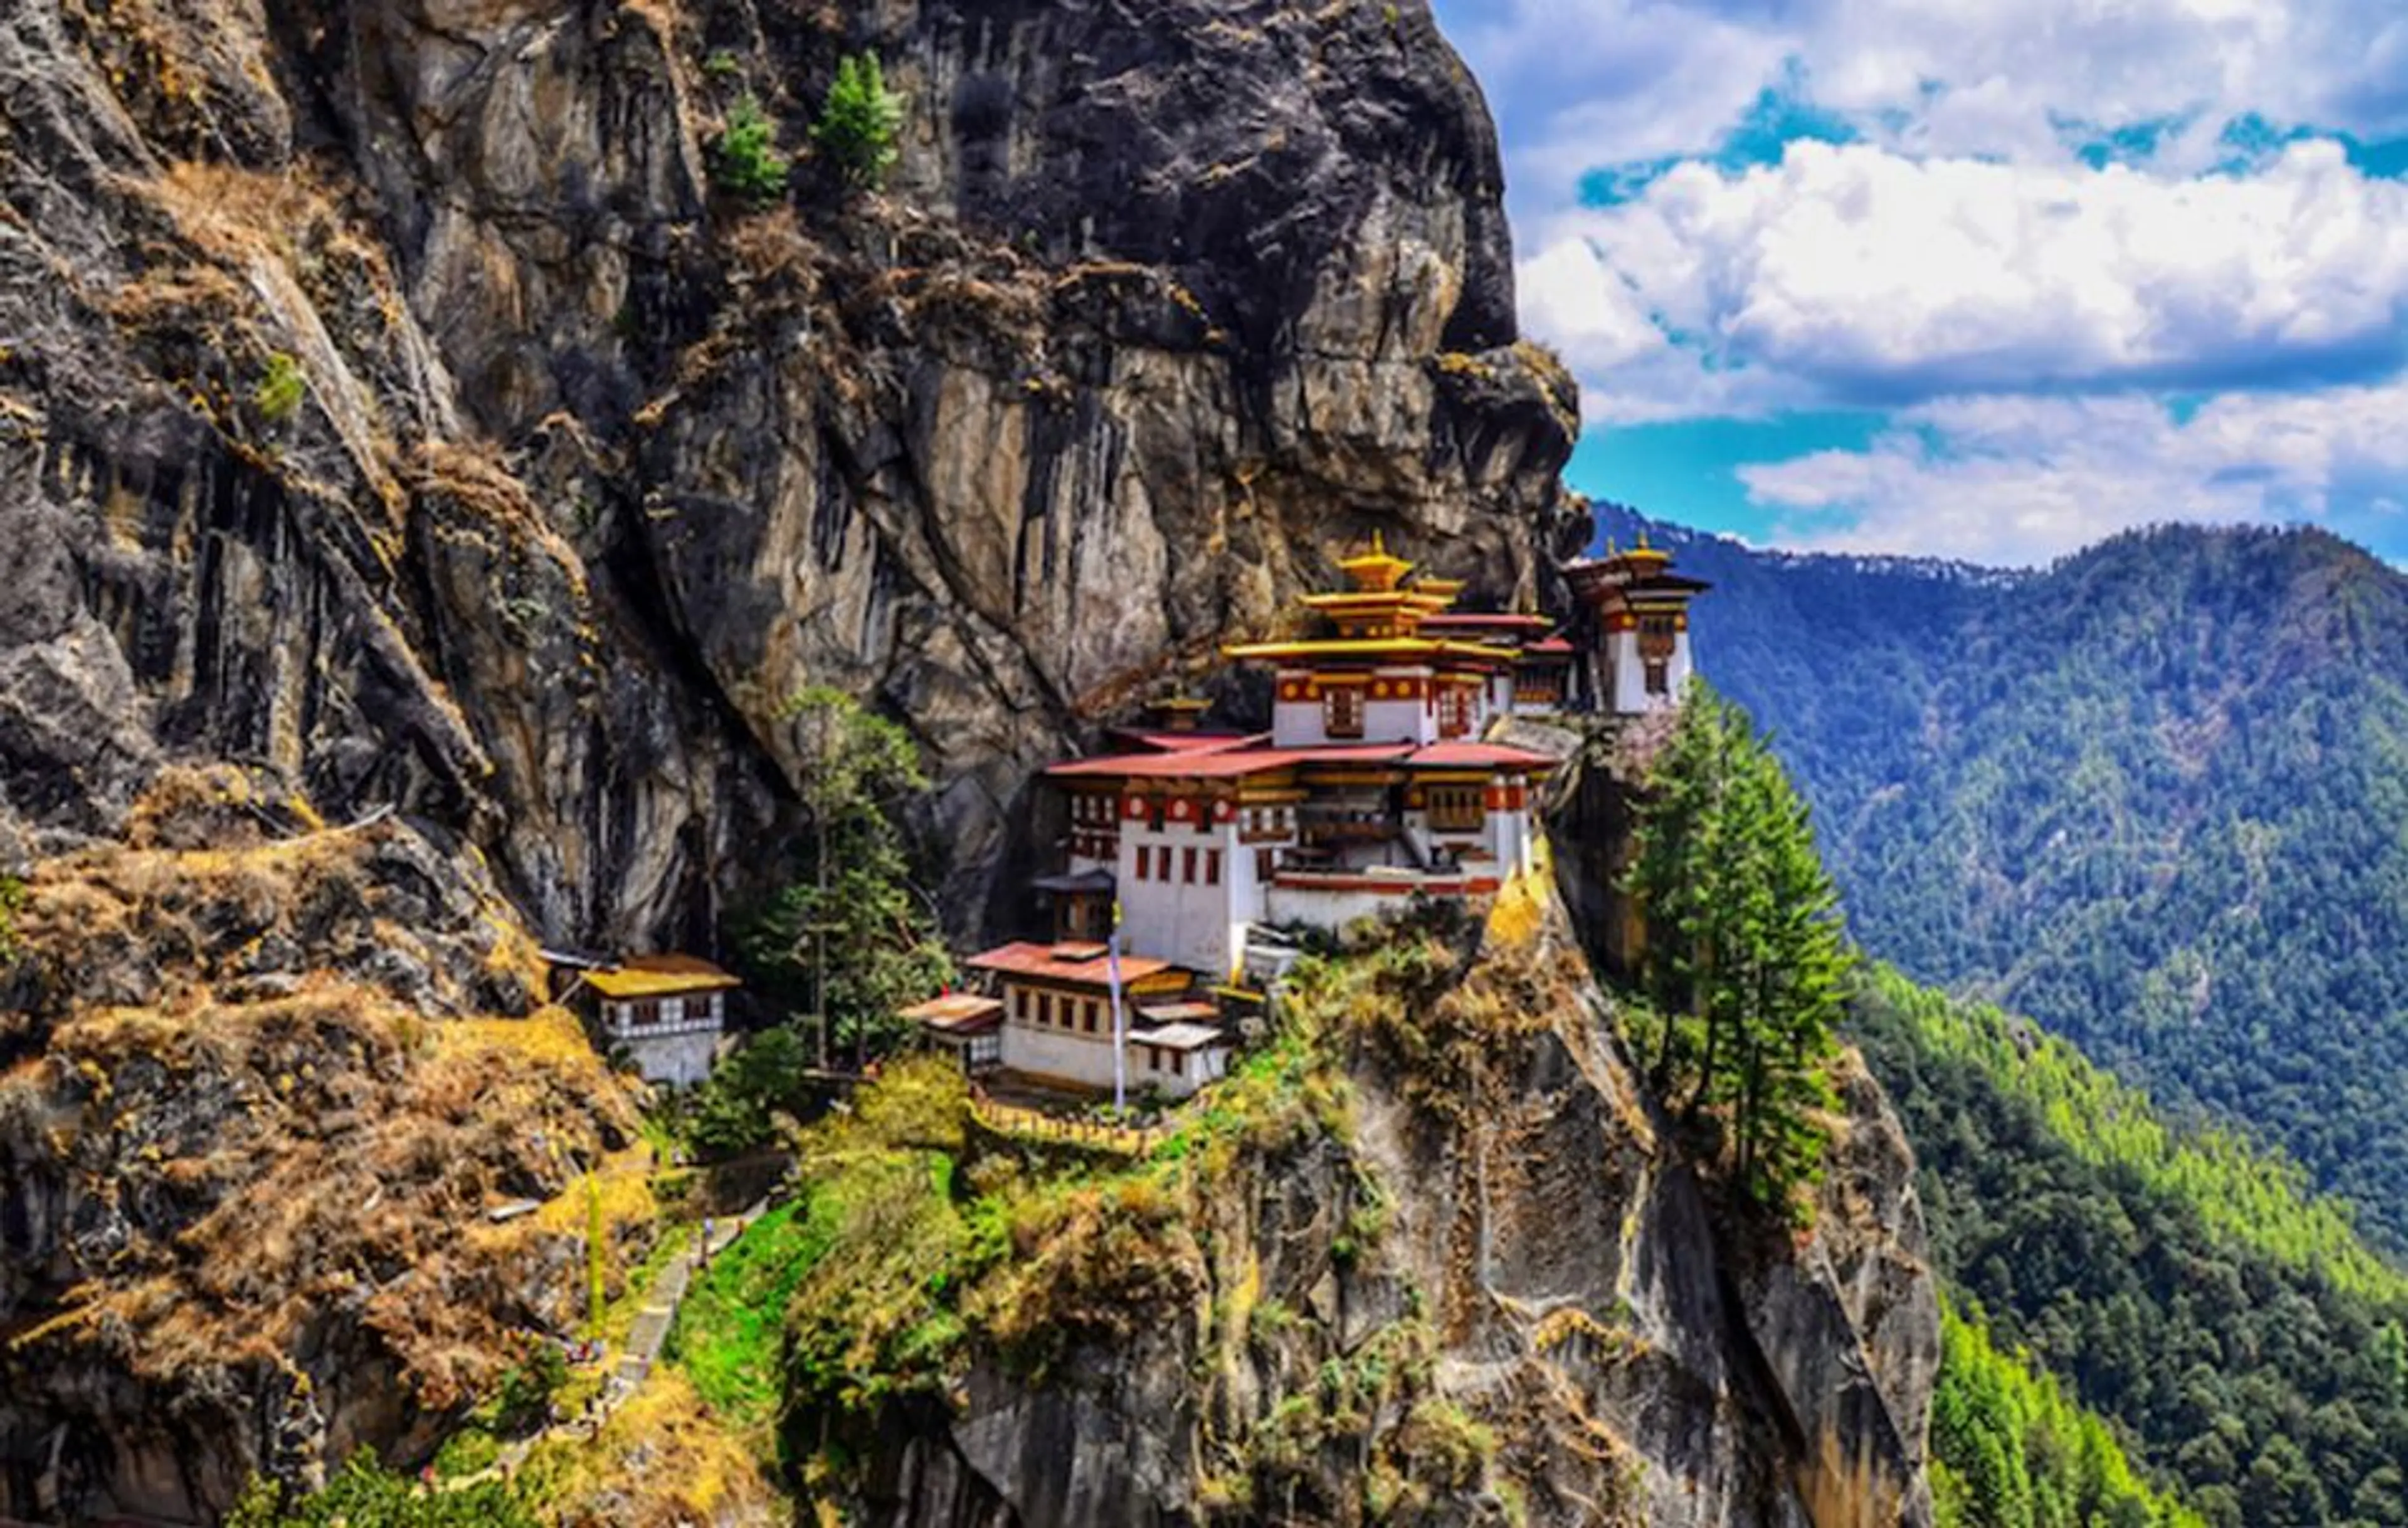 Tiger's Nest Monastery